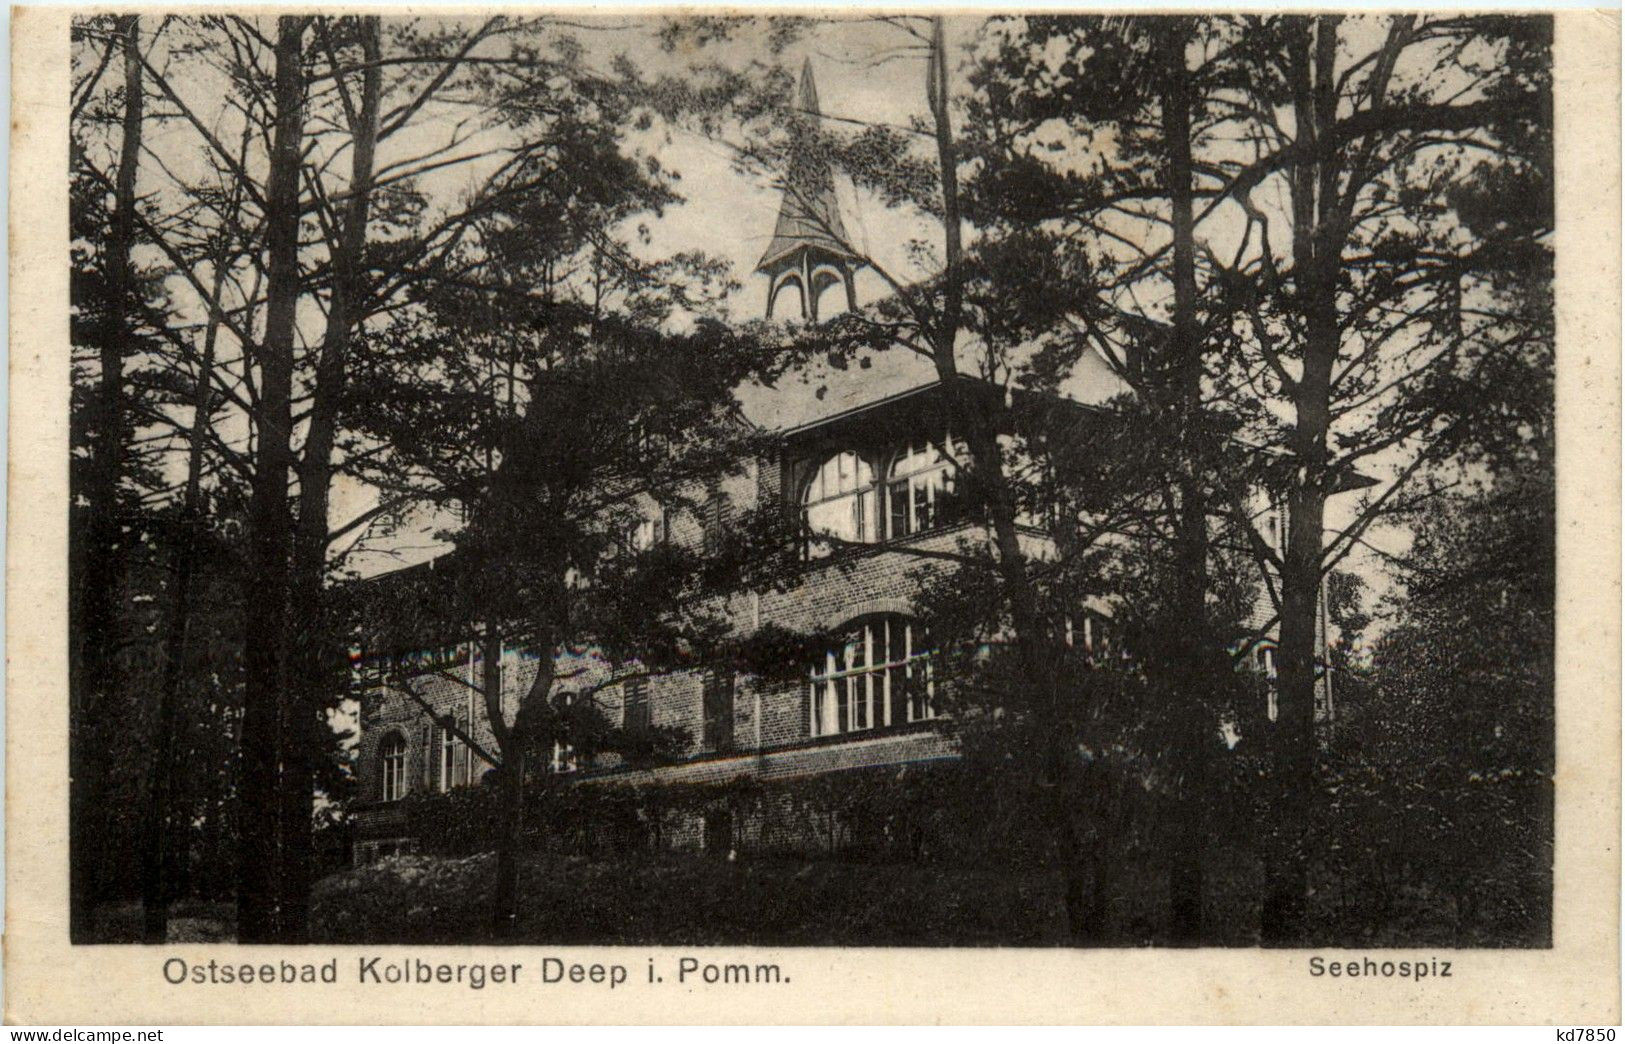 Ostseebad Kolberger Deep - Seehospiz - Pommern